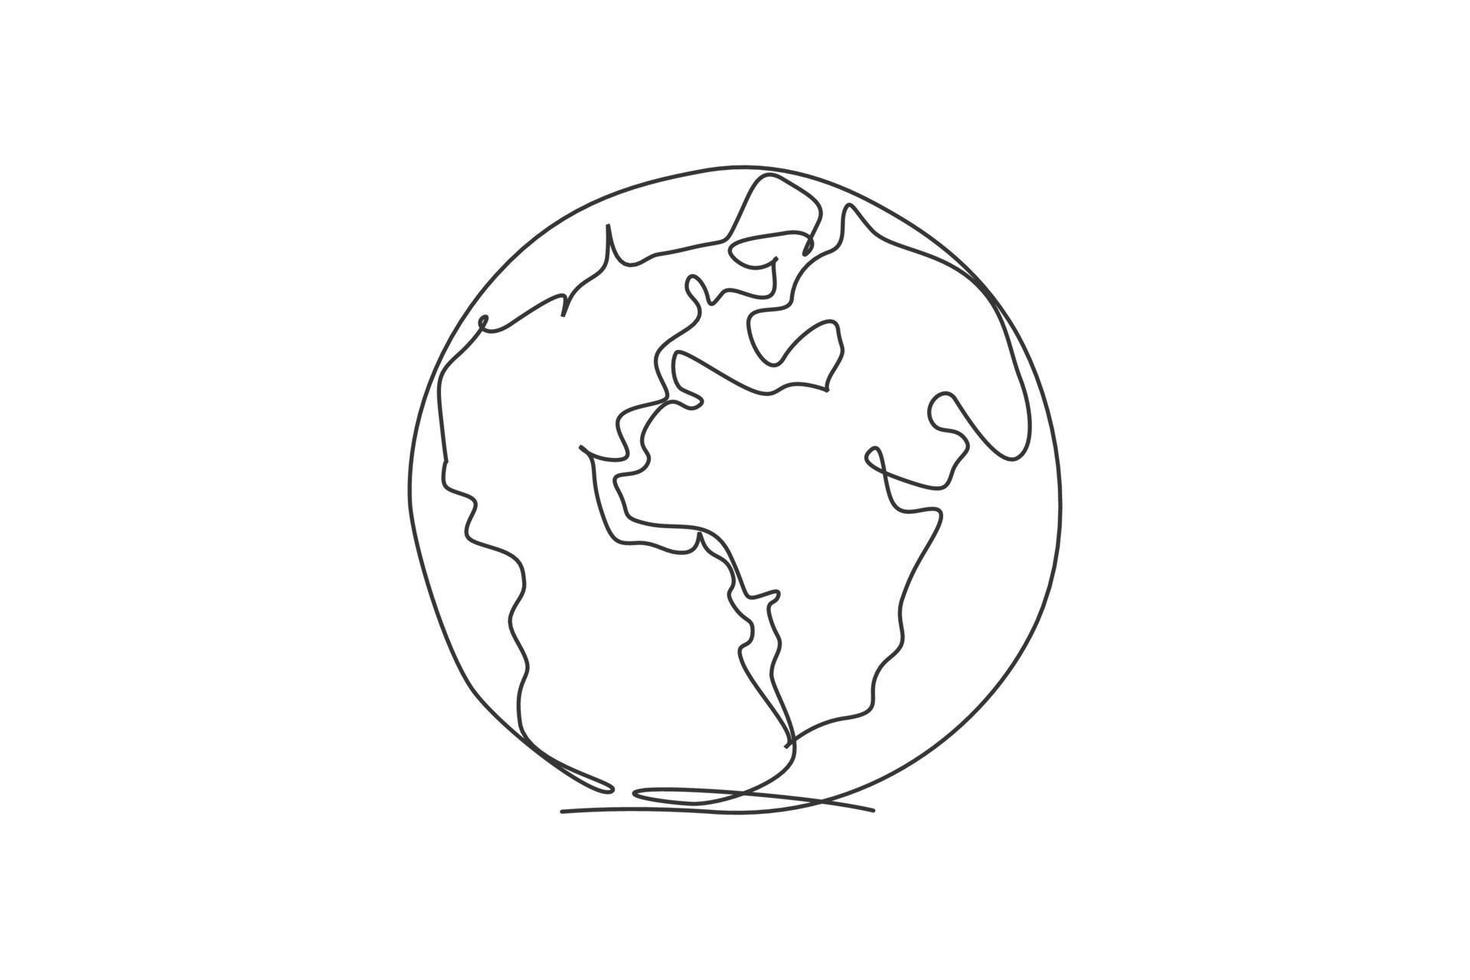 globo terráqueo del mundo. Icono gráfico de geografía de mapa global redondo de línea continua única. Doodle de dibujo de una línea simple para el concepto de educación. diseño minimalista de la ilustración del vector aislado en el fondo blanco